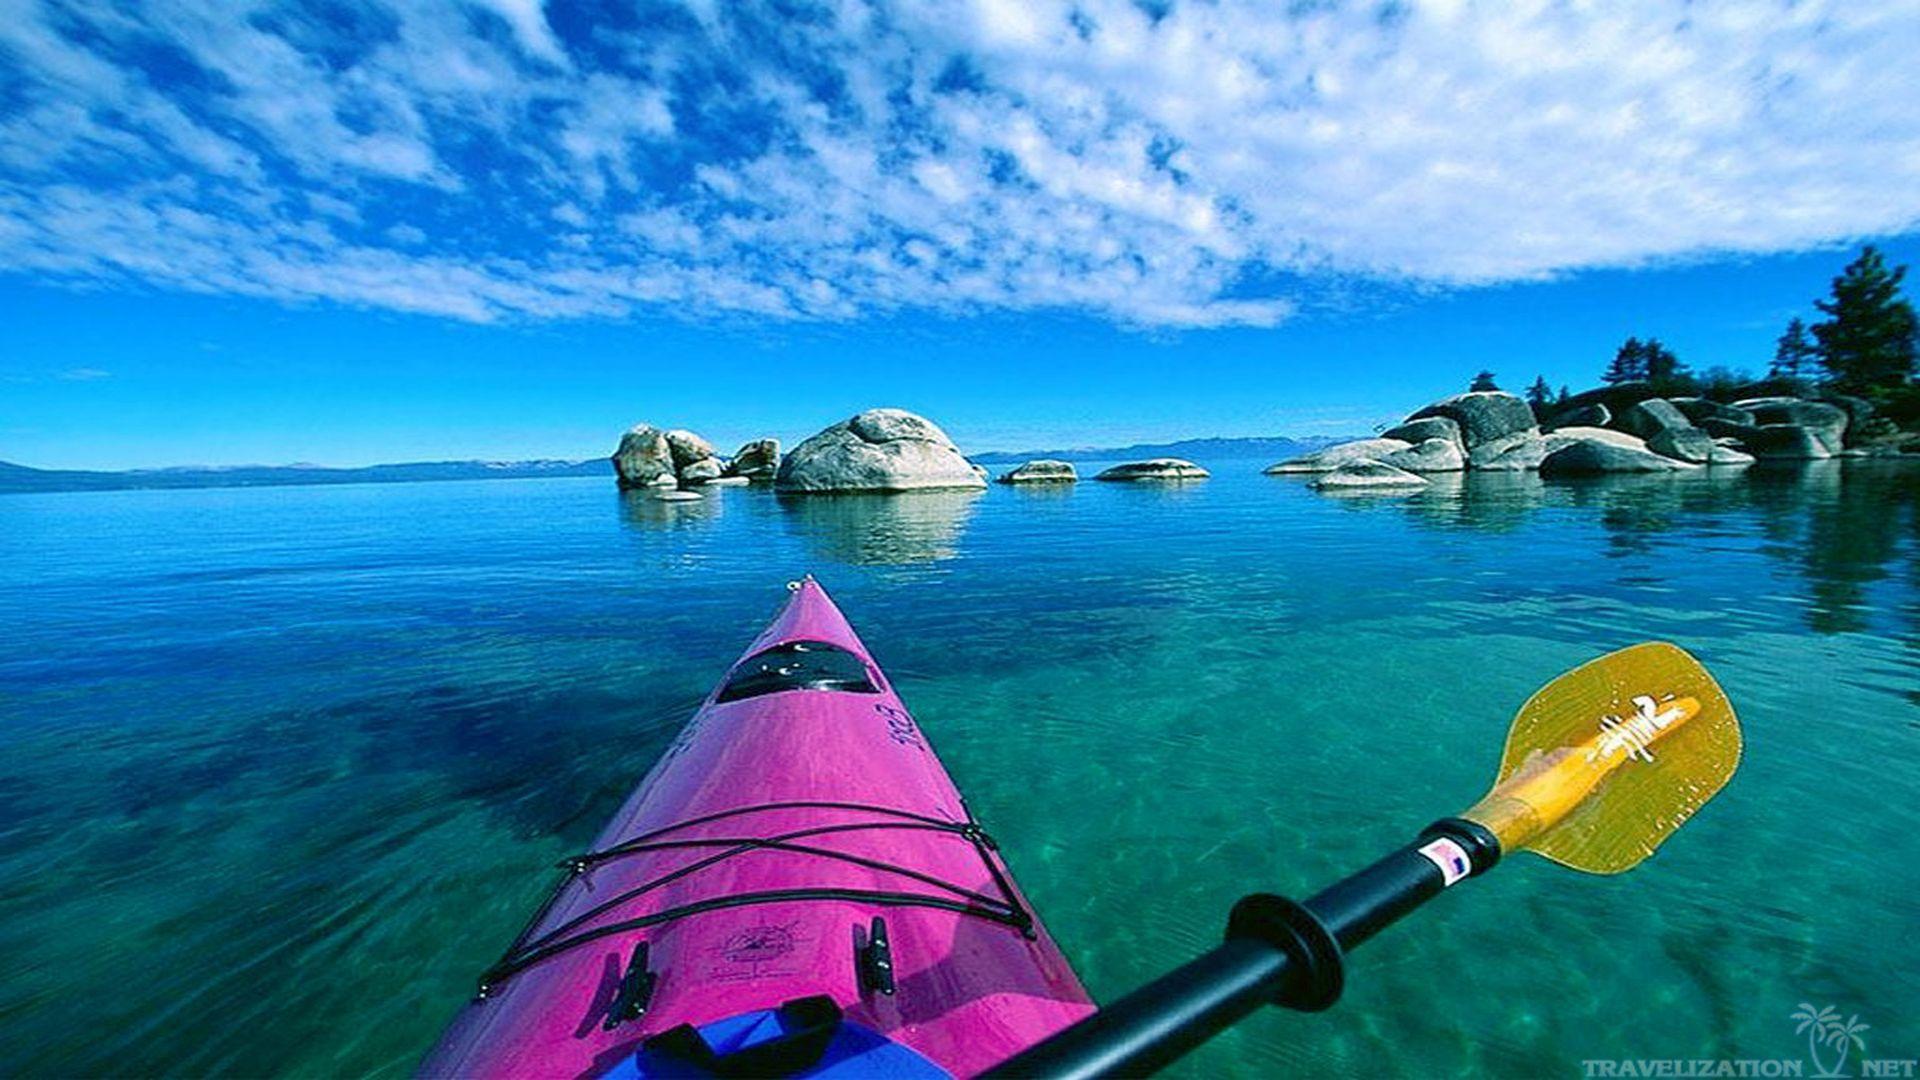 Reflection - Chiêm ngưỡng những bức ảnh kayak tuyệt đẹp phản chiếu trên mặt nước trong xanh. Hình ảnh này sẽ khiến bạn cảm thấy sự bình yên và sự lắng đọng trước thiên nhiên hùng vĩ và tuyệt đẹp.